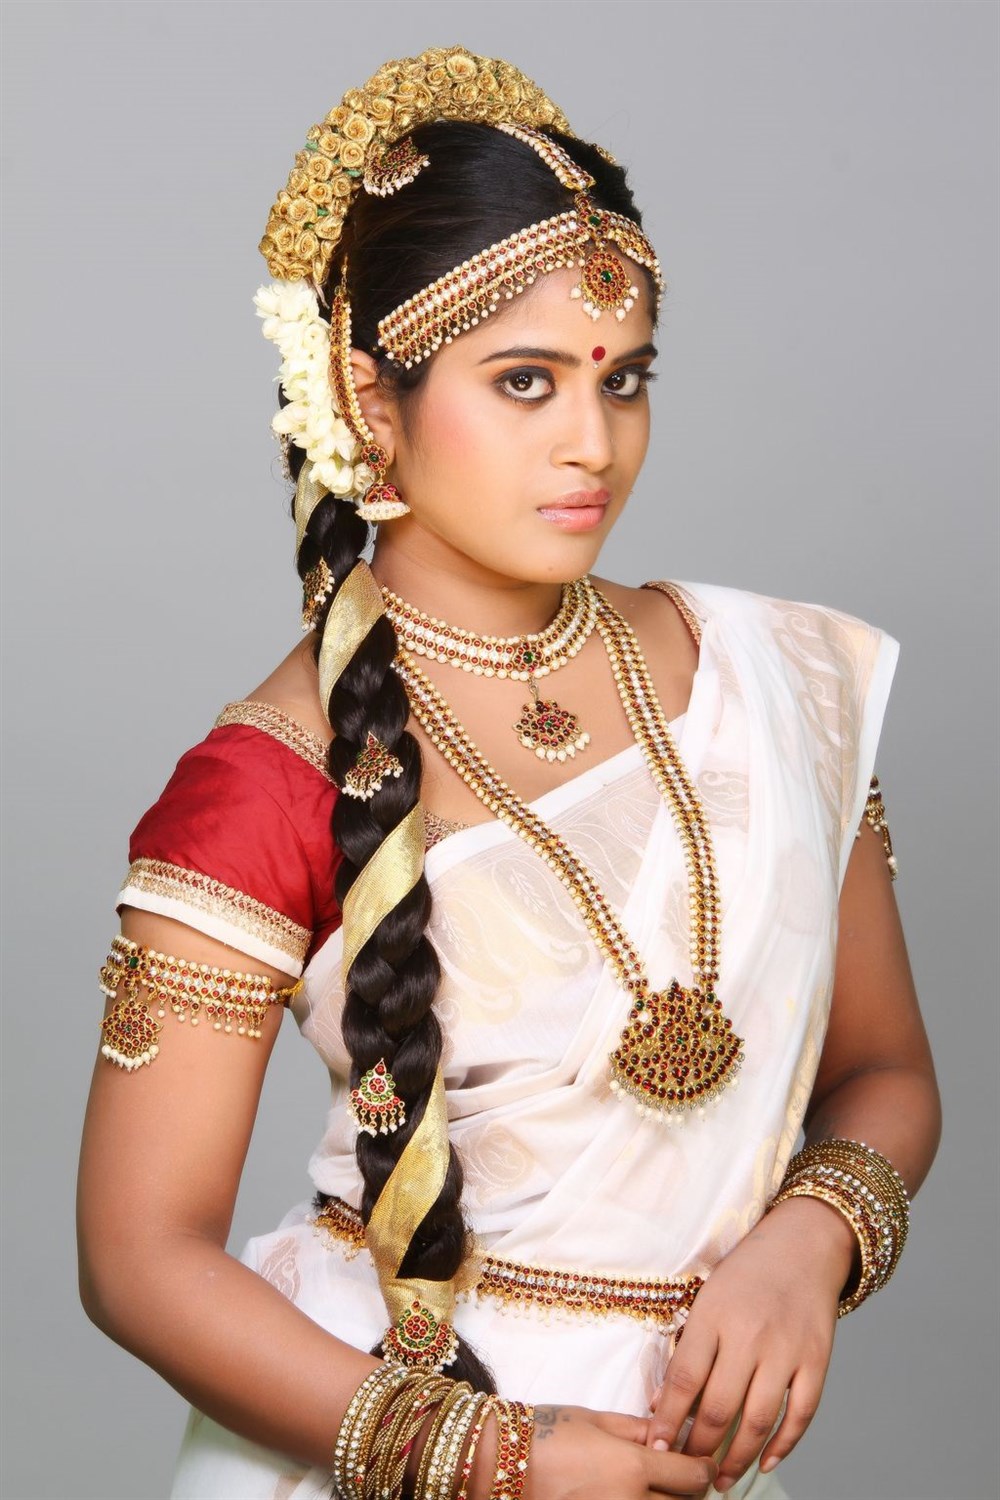 Tamil Actress Rithika Photoshoot Stills | Moviegalleri.net